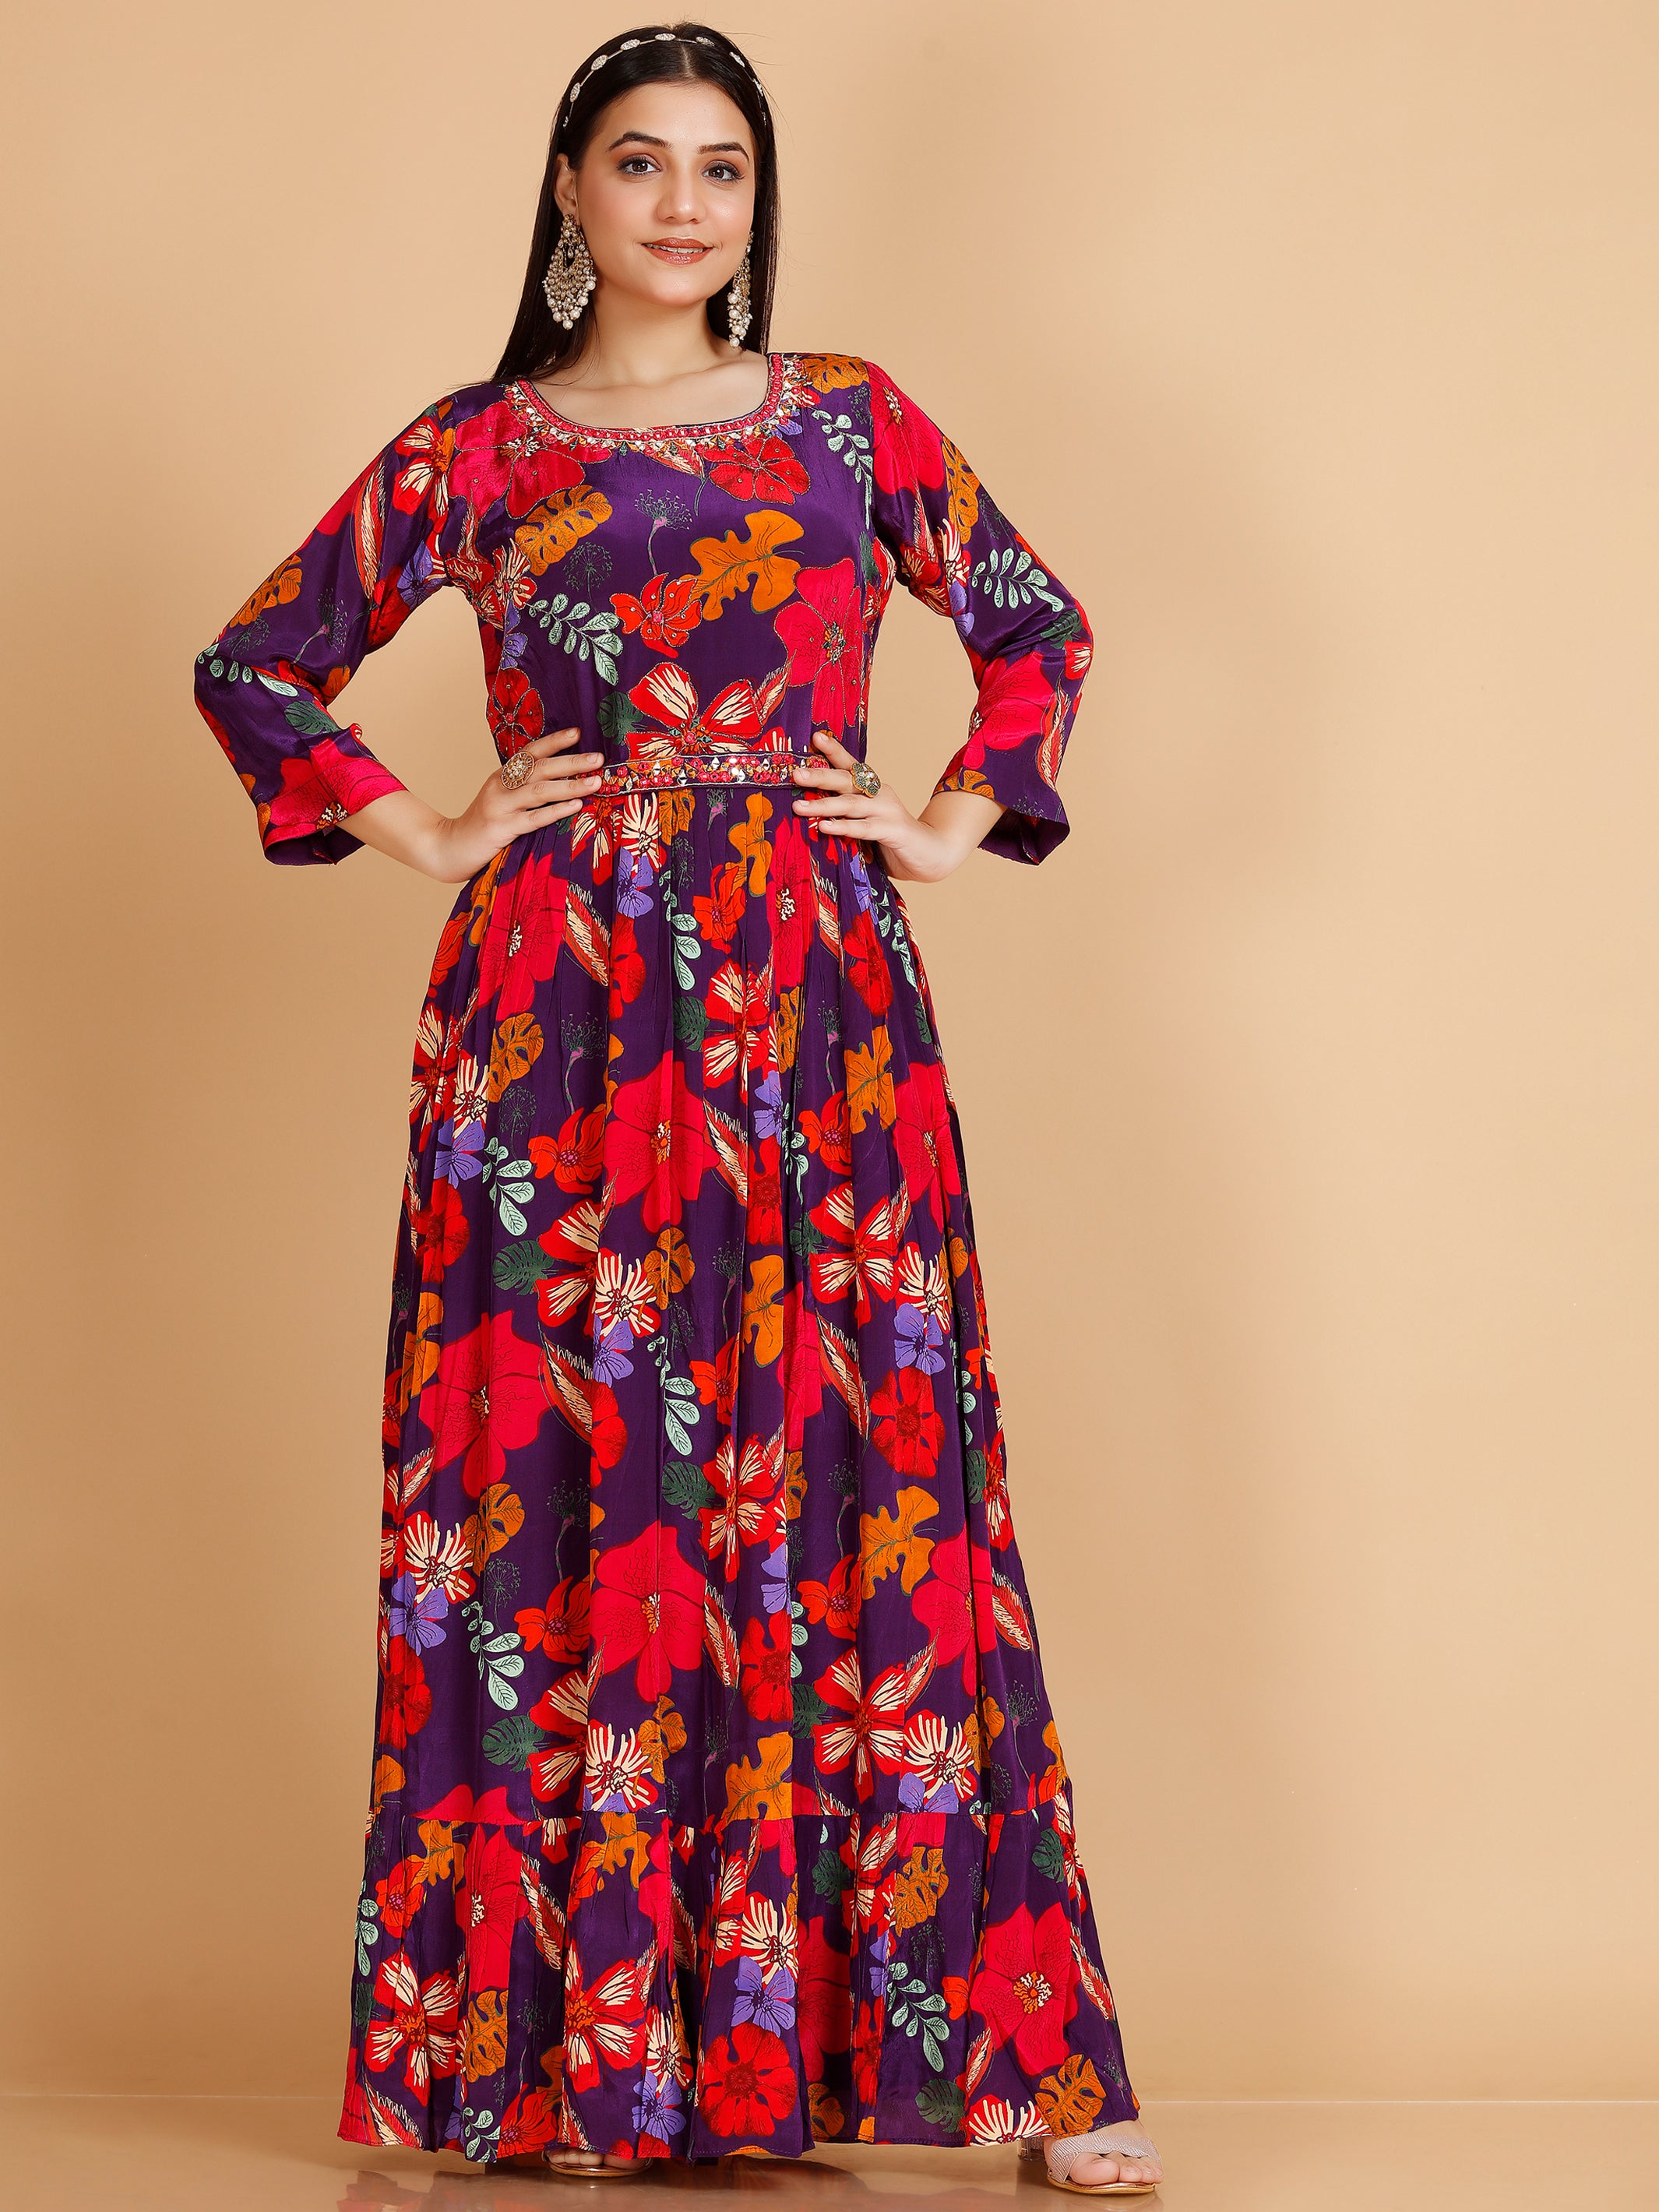 Beautiful White Rayon Salwar Kameez Pakistani Designer Patiyala Suit Women  Dress | eBay